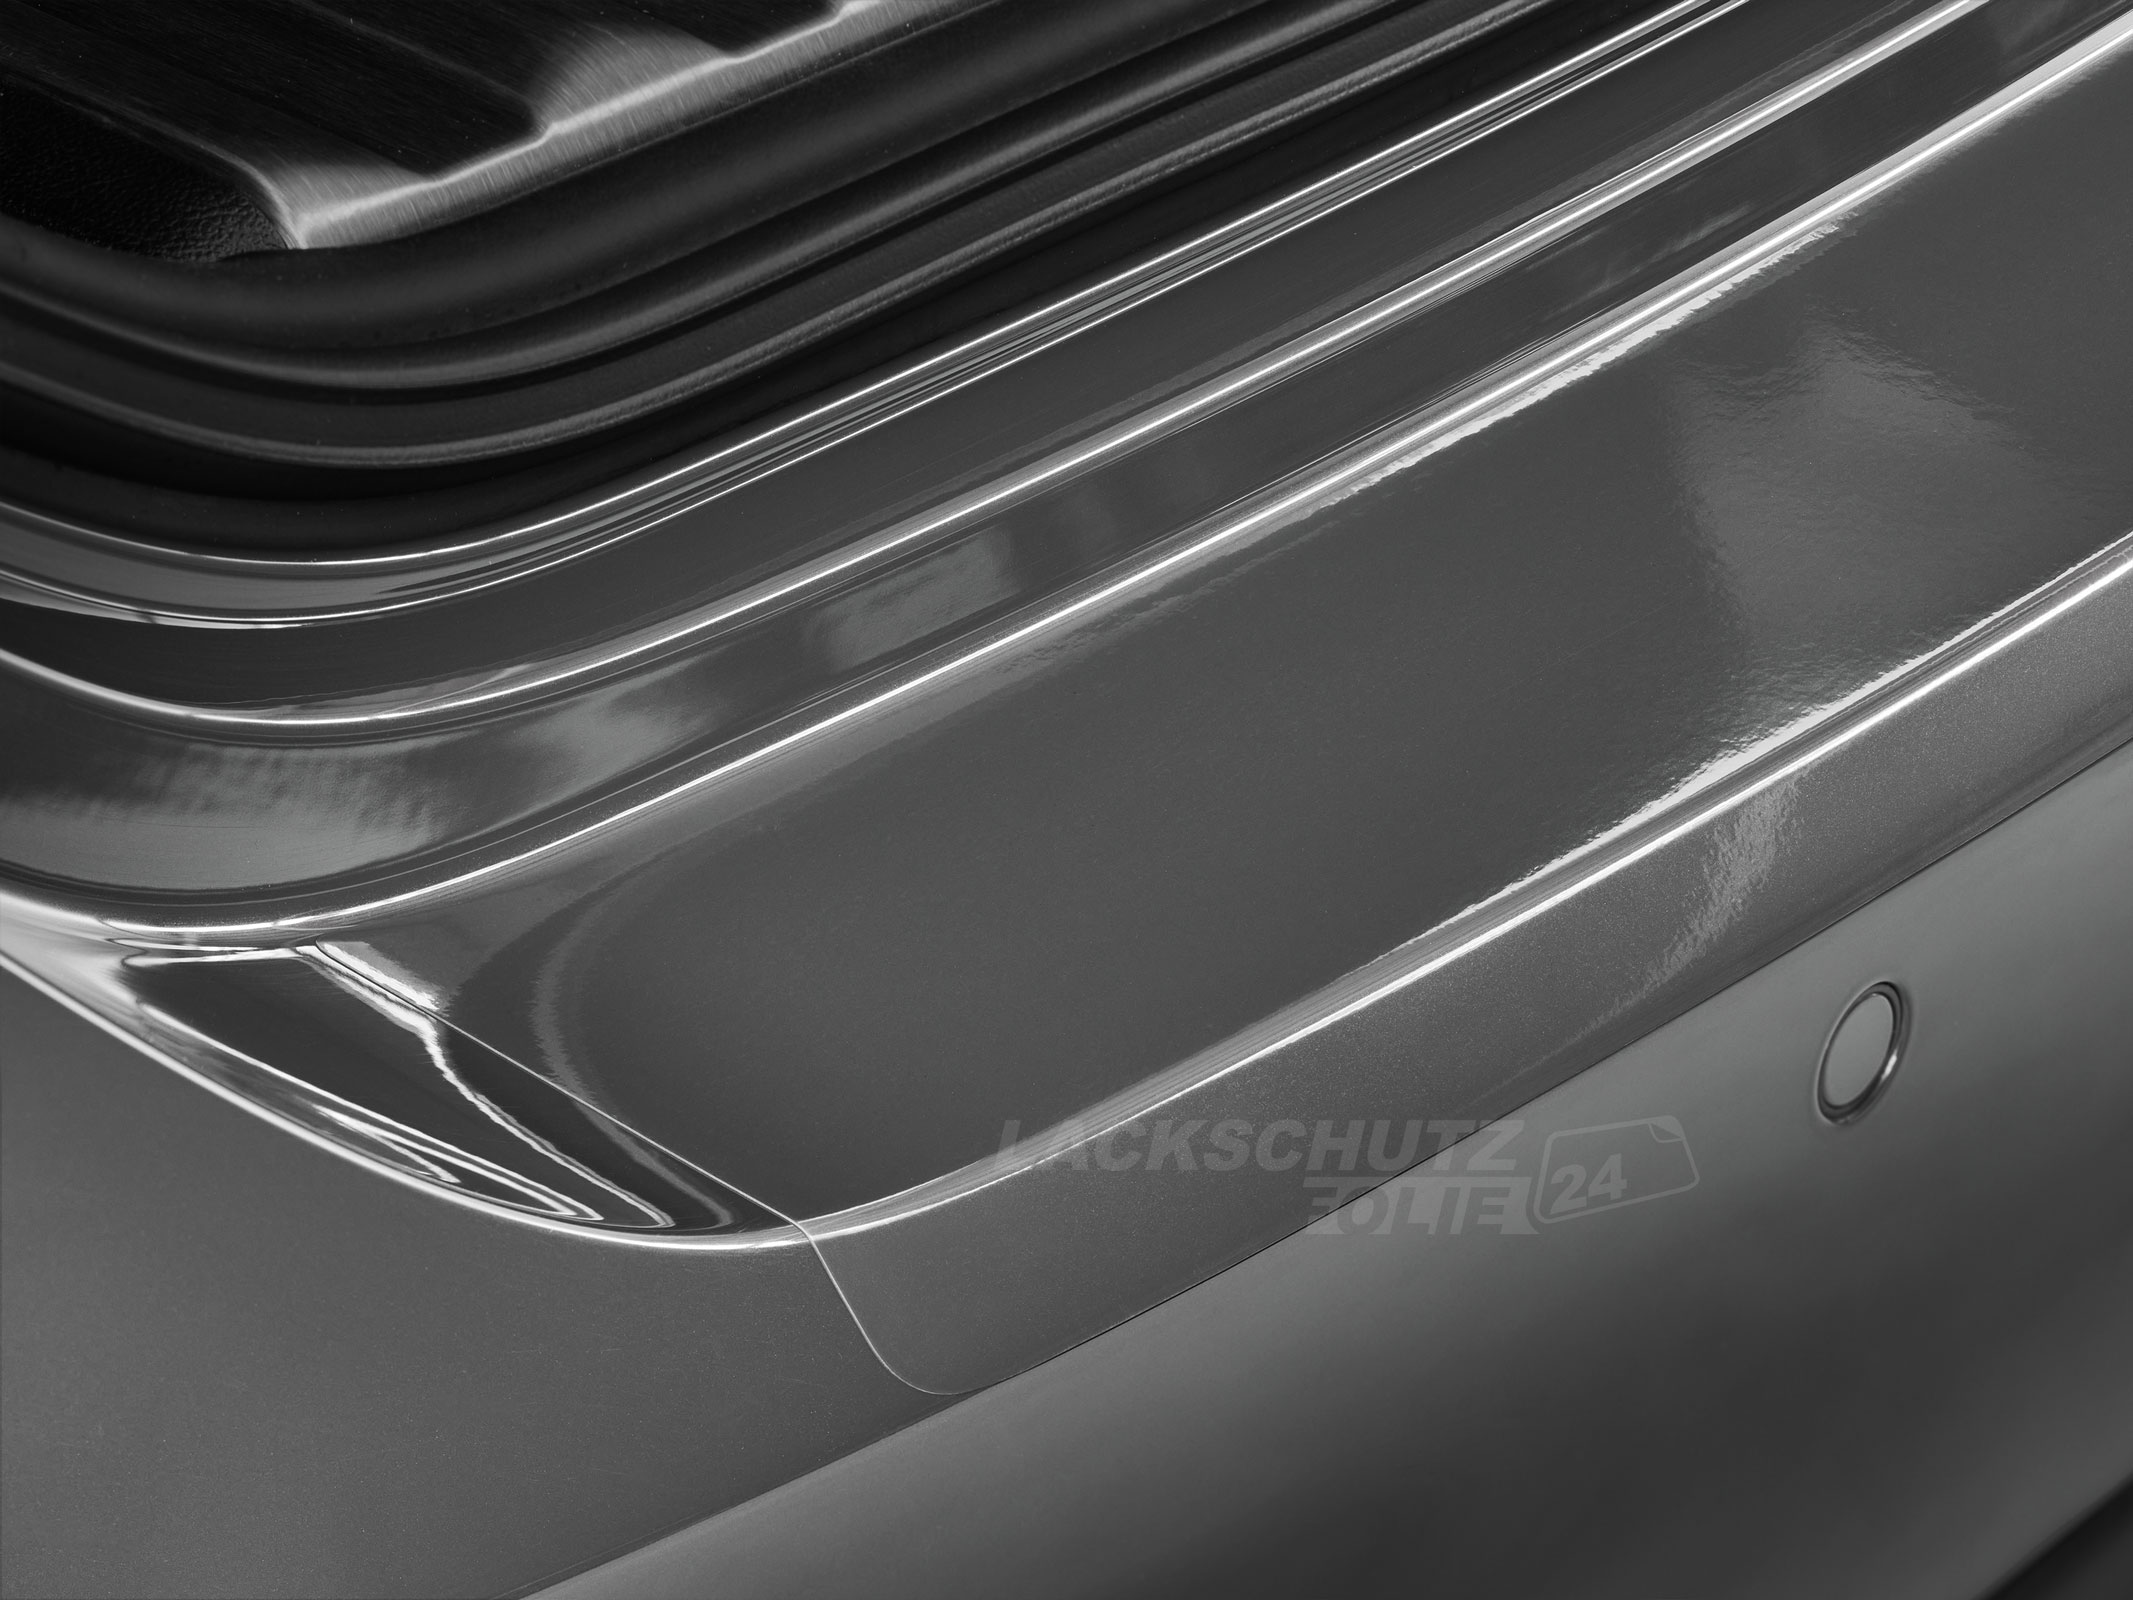 Ladekantenschutzfolie - Transparent Glatt Hochglänzend 240 µm stark für Range Rover Evoque Typ L538, BJ 09/2011-2018